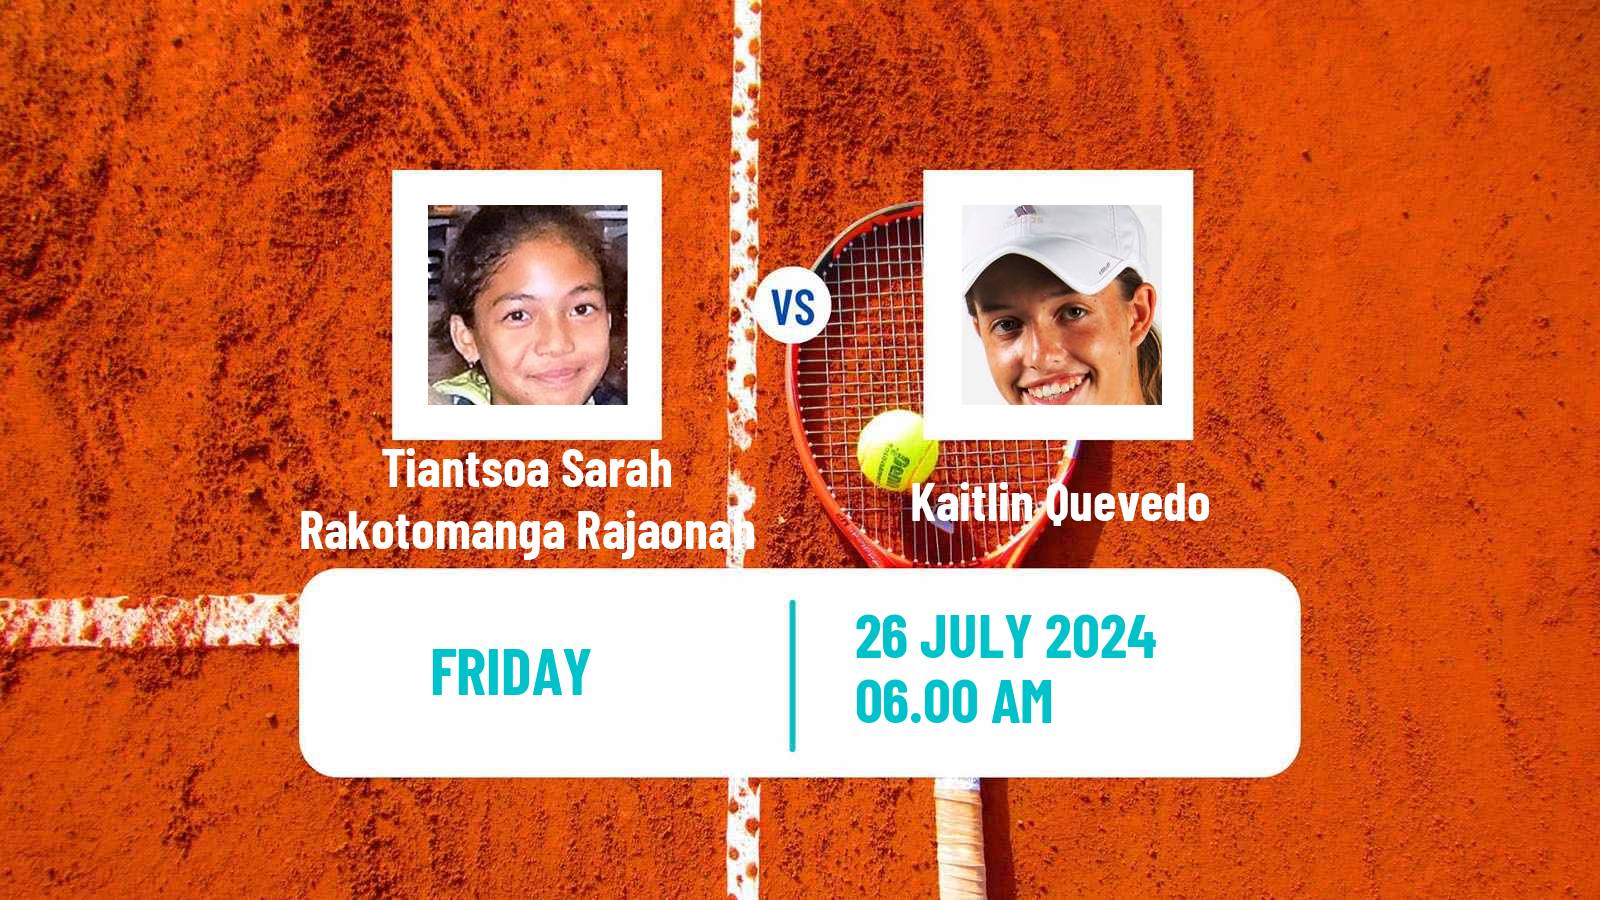 Tennis ITF W35 Casablanca Women Tiantsoa Sarah Rakotomanga Rajaonah - Kaitlin Quevedo